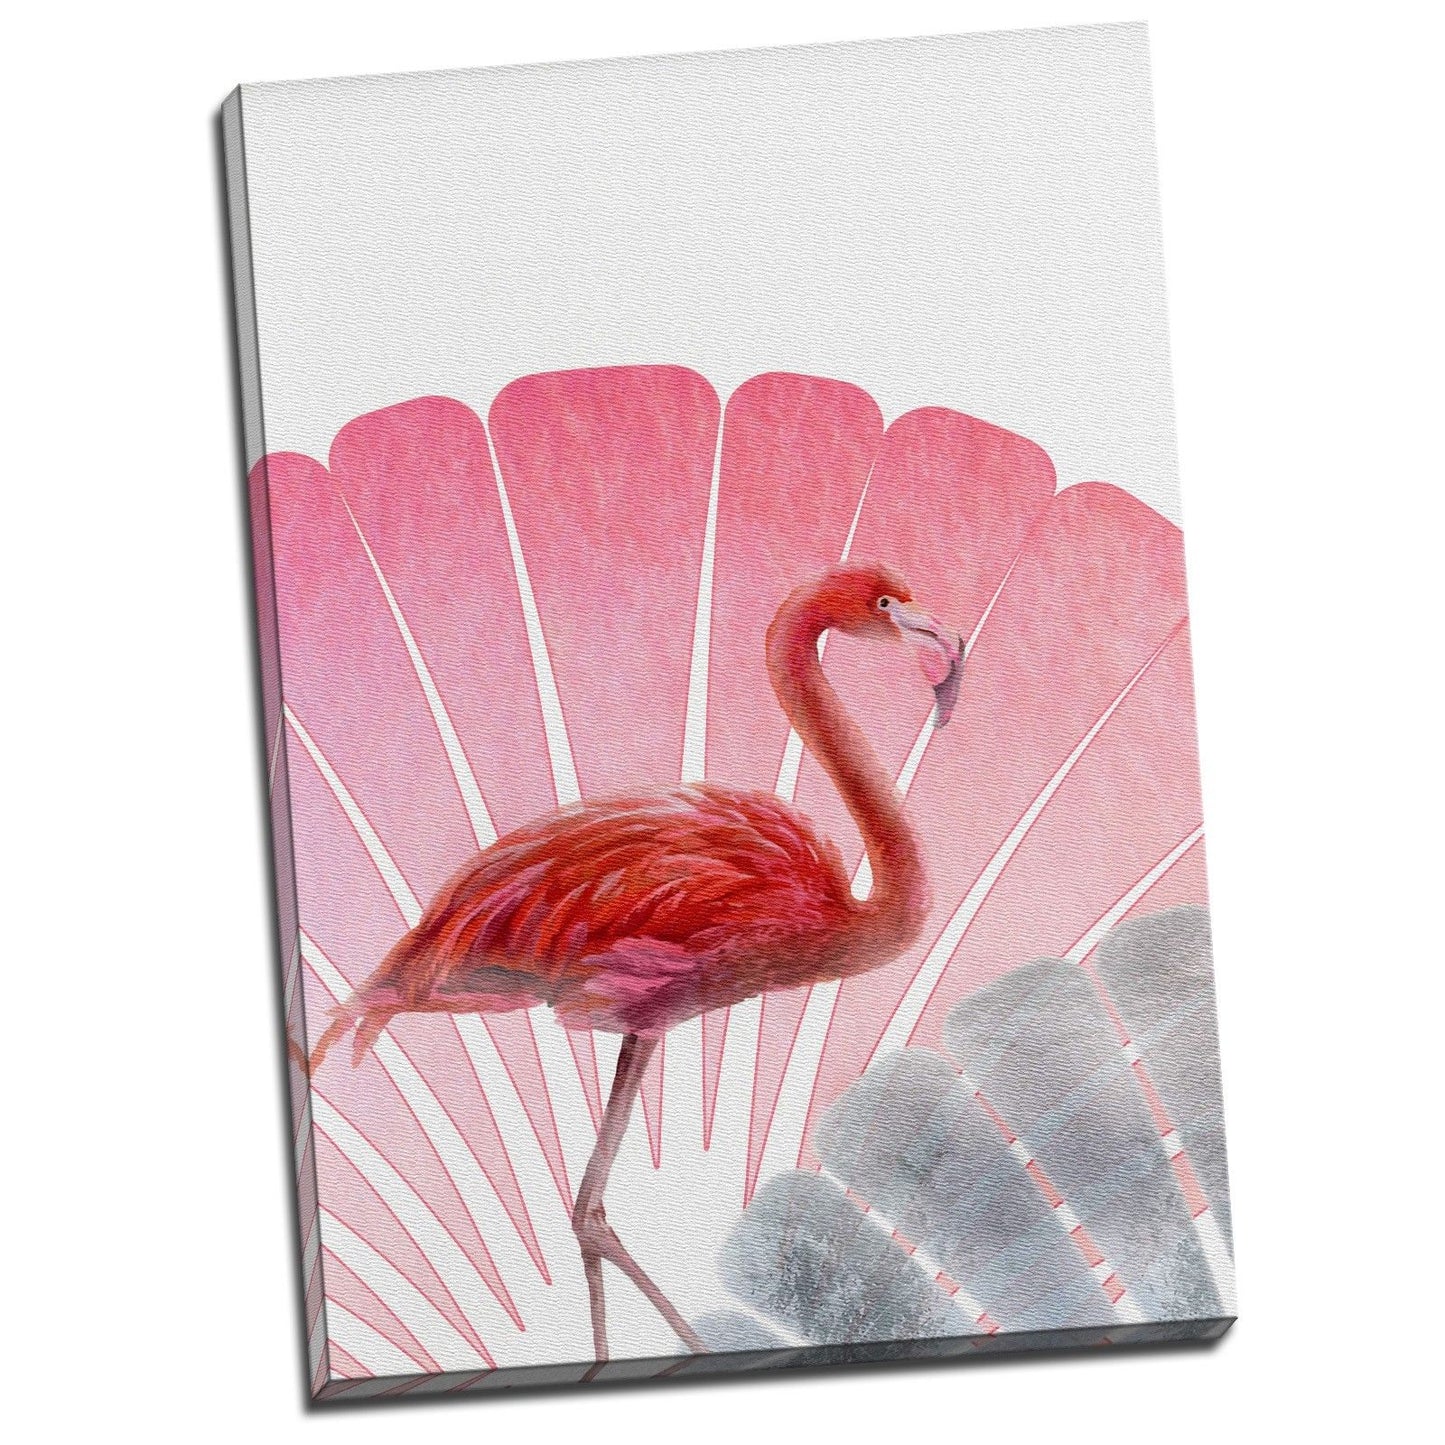 Framed Stretched Canvas Dancing Flamingo pink deco modern art print lotus leaf